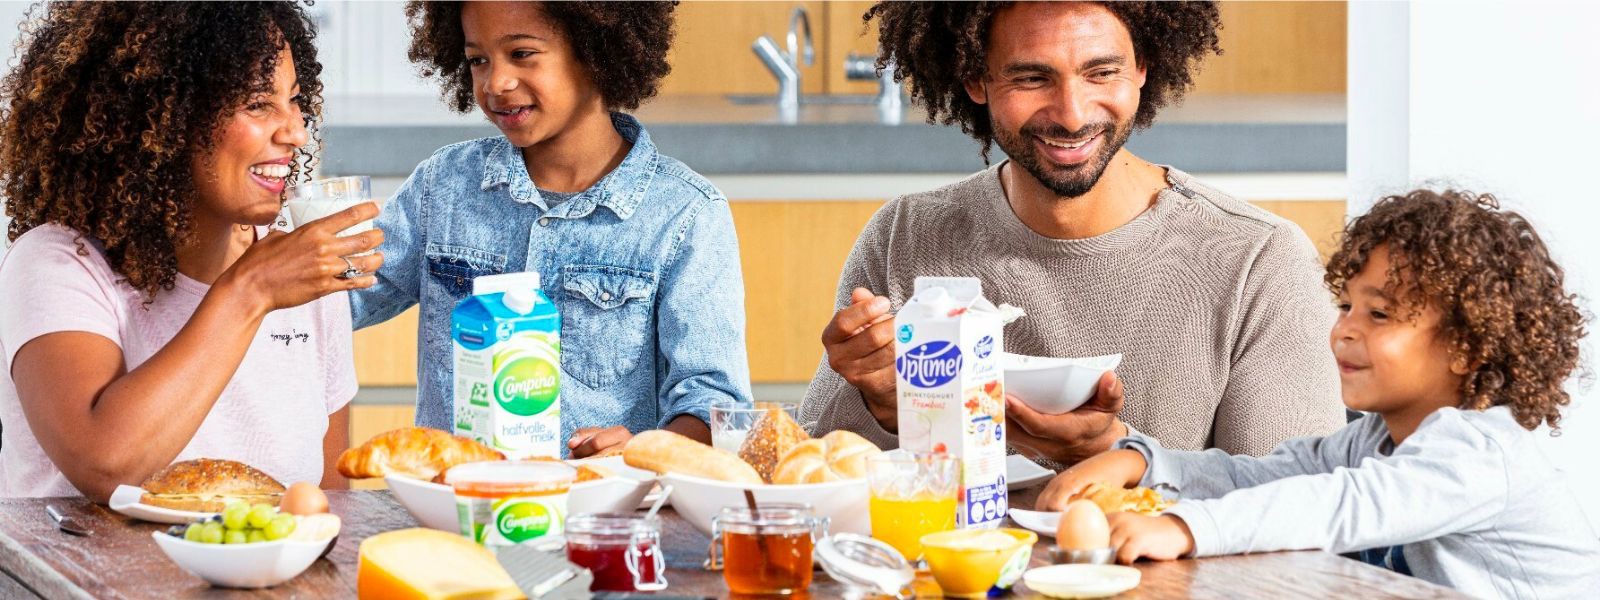 Una famiglia di 4 persone fa colazione insieme.